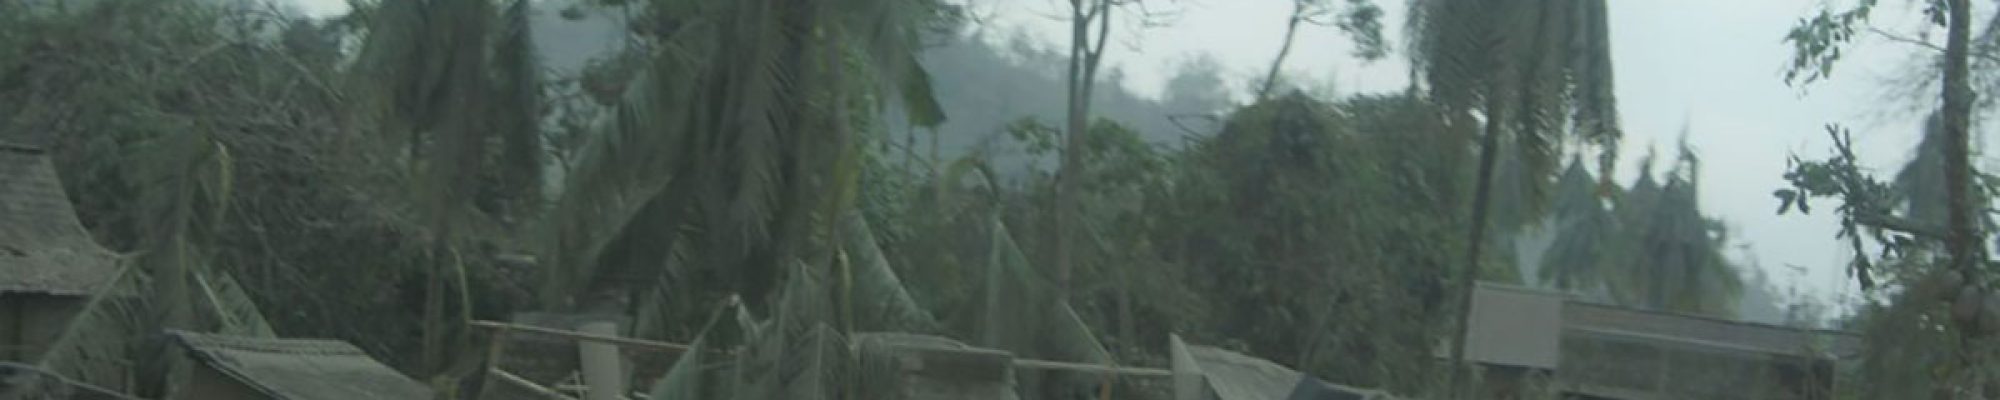 Damage after Mt Merapi eruption in Indonesia